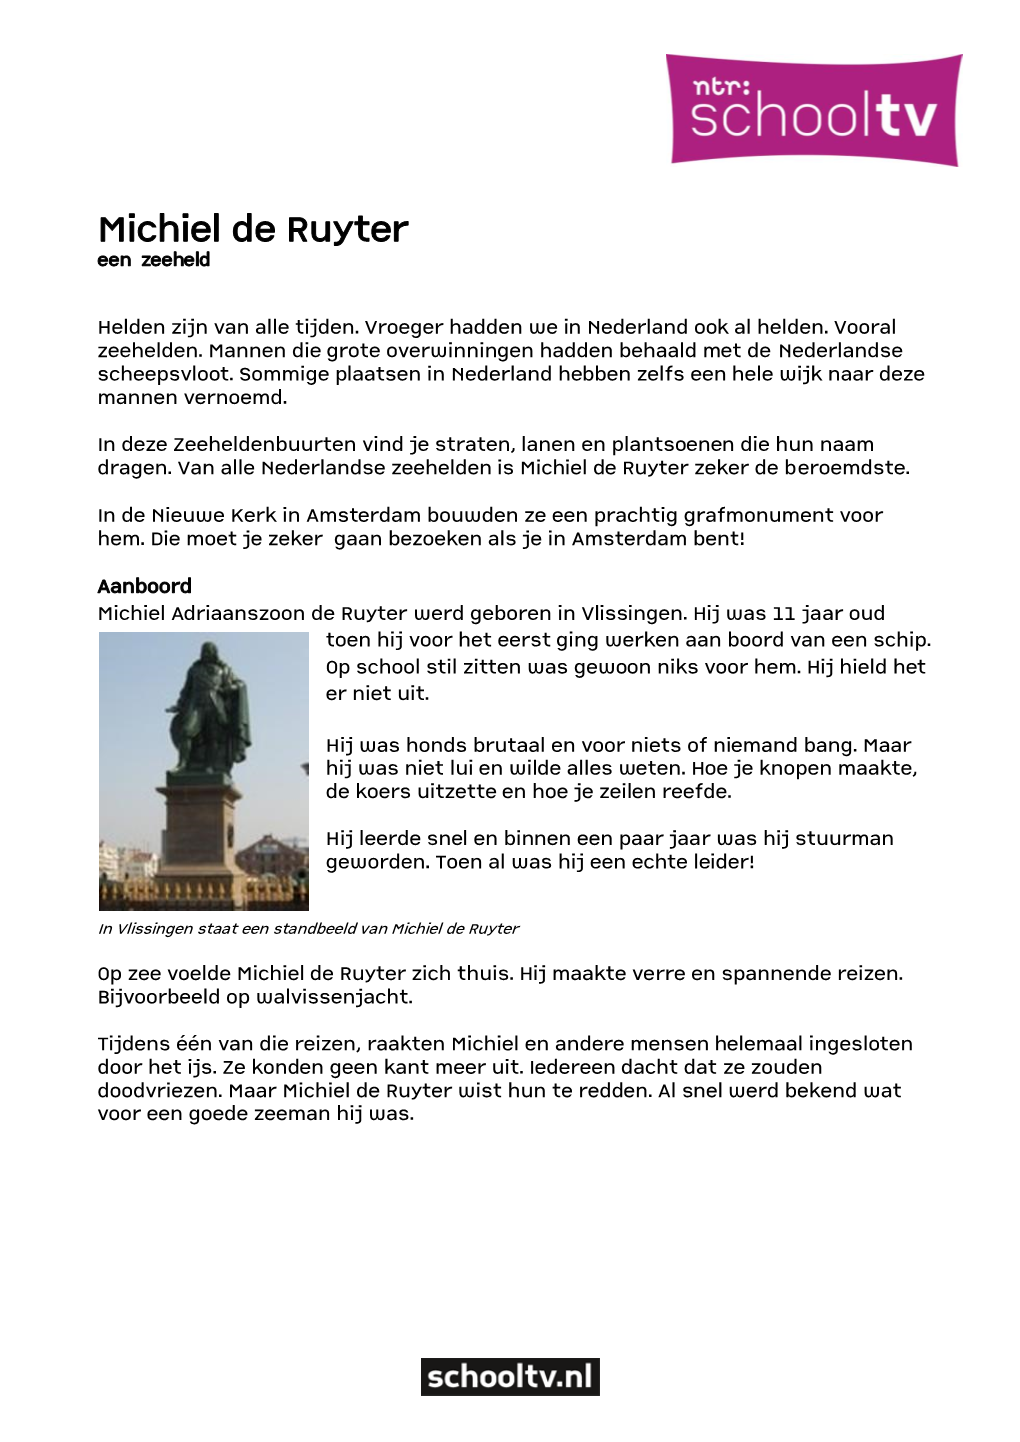 Wie Was Michiel De Ruyter?